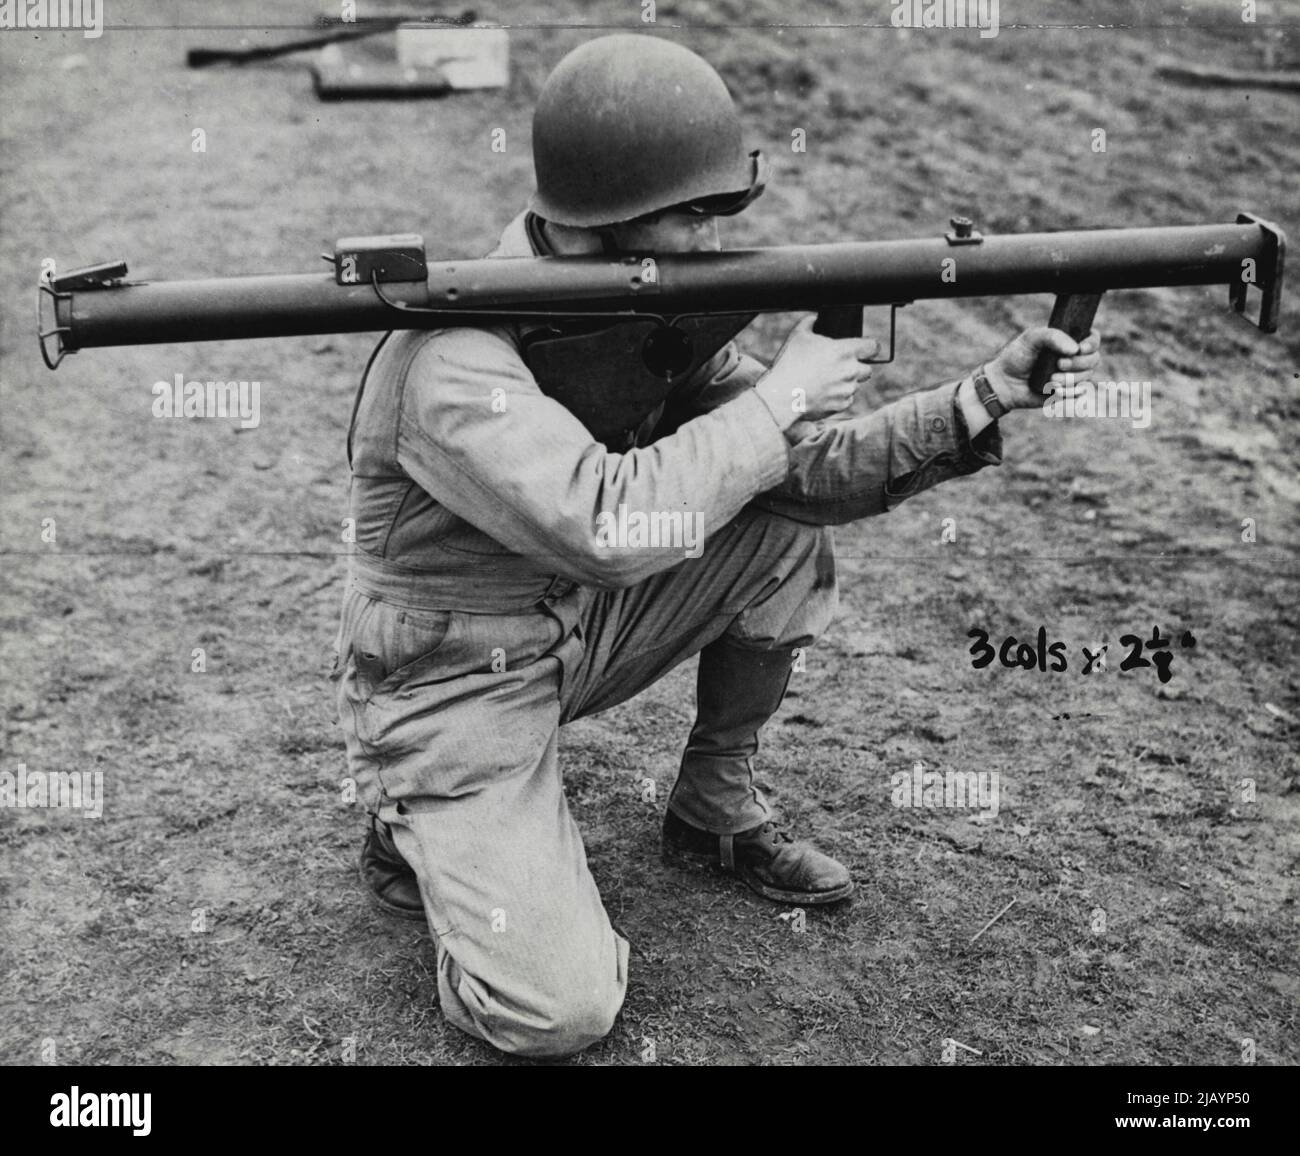 Der panzerbrechende 'Bazooka' - richtige Art, die Waffe zu feuern. Betrieben in Nordafrika und Sizilien mit tödlicher Wirkung gegen Nazi-Panzer. 12. August 1944. (Foto der New York Times). Stockfoto